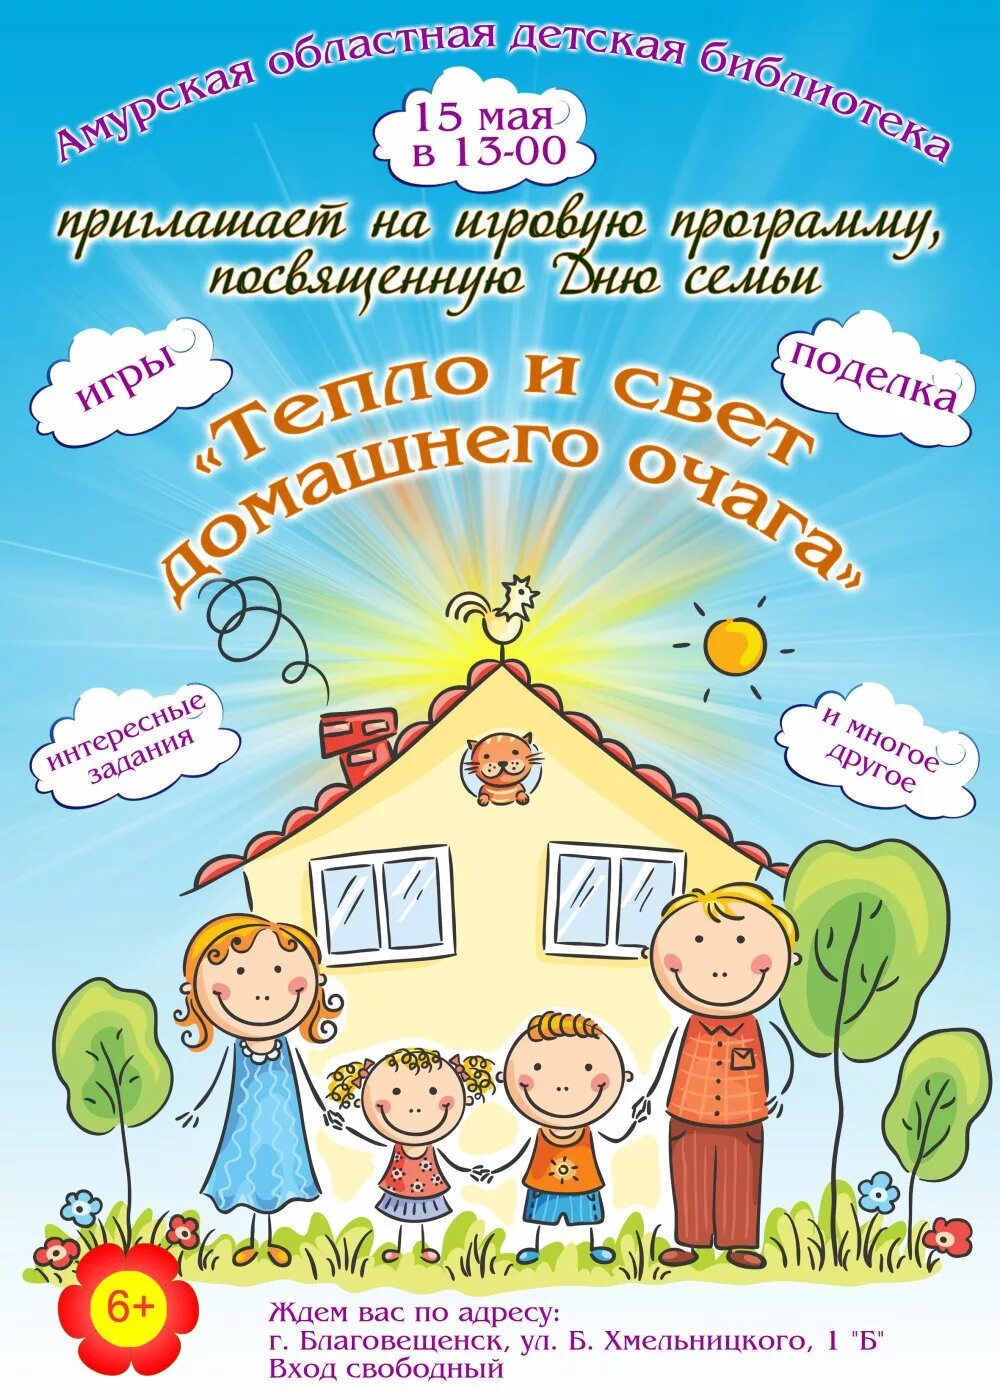 День семьи 15 мая. Афиша на день семьи 15 мая. Международный день семьи плакат. Международный день семьи афиша.